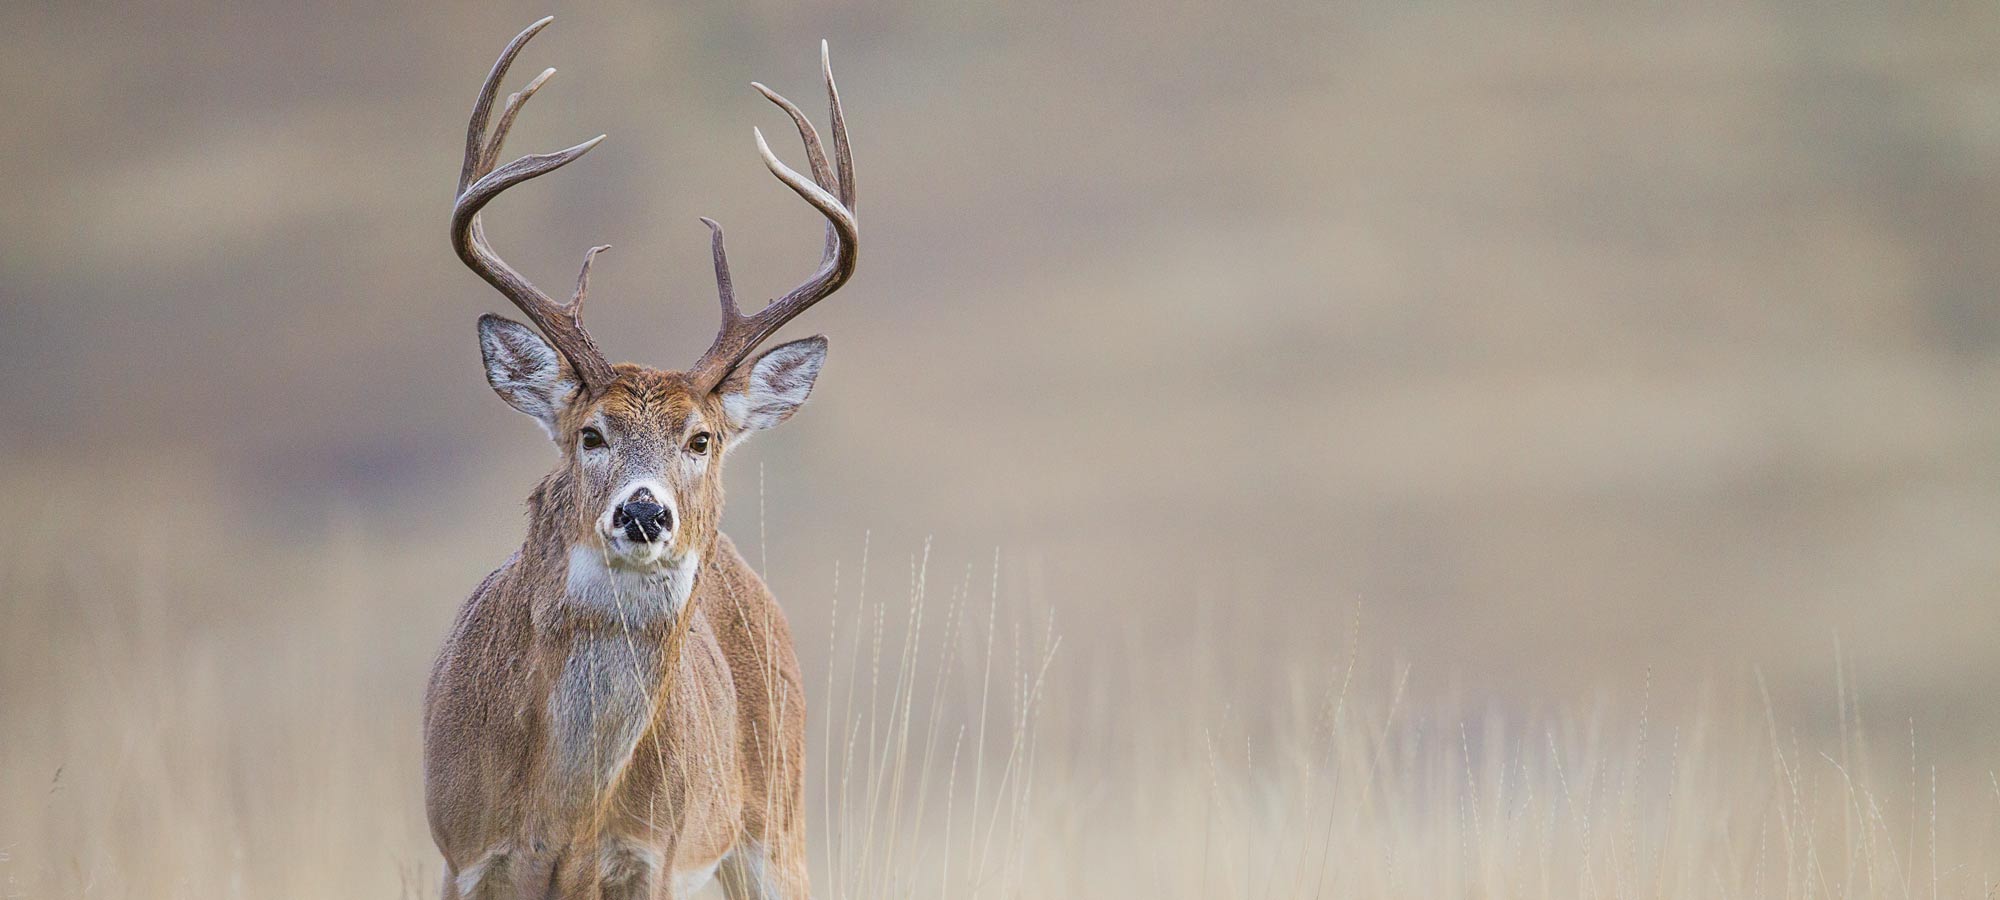 The No Excuses Deer Hunting Season